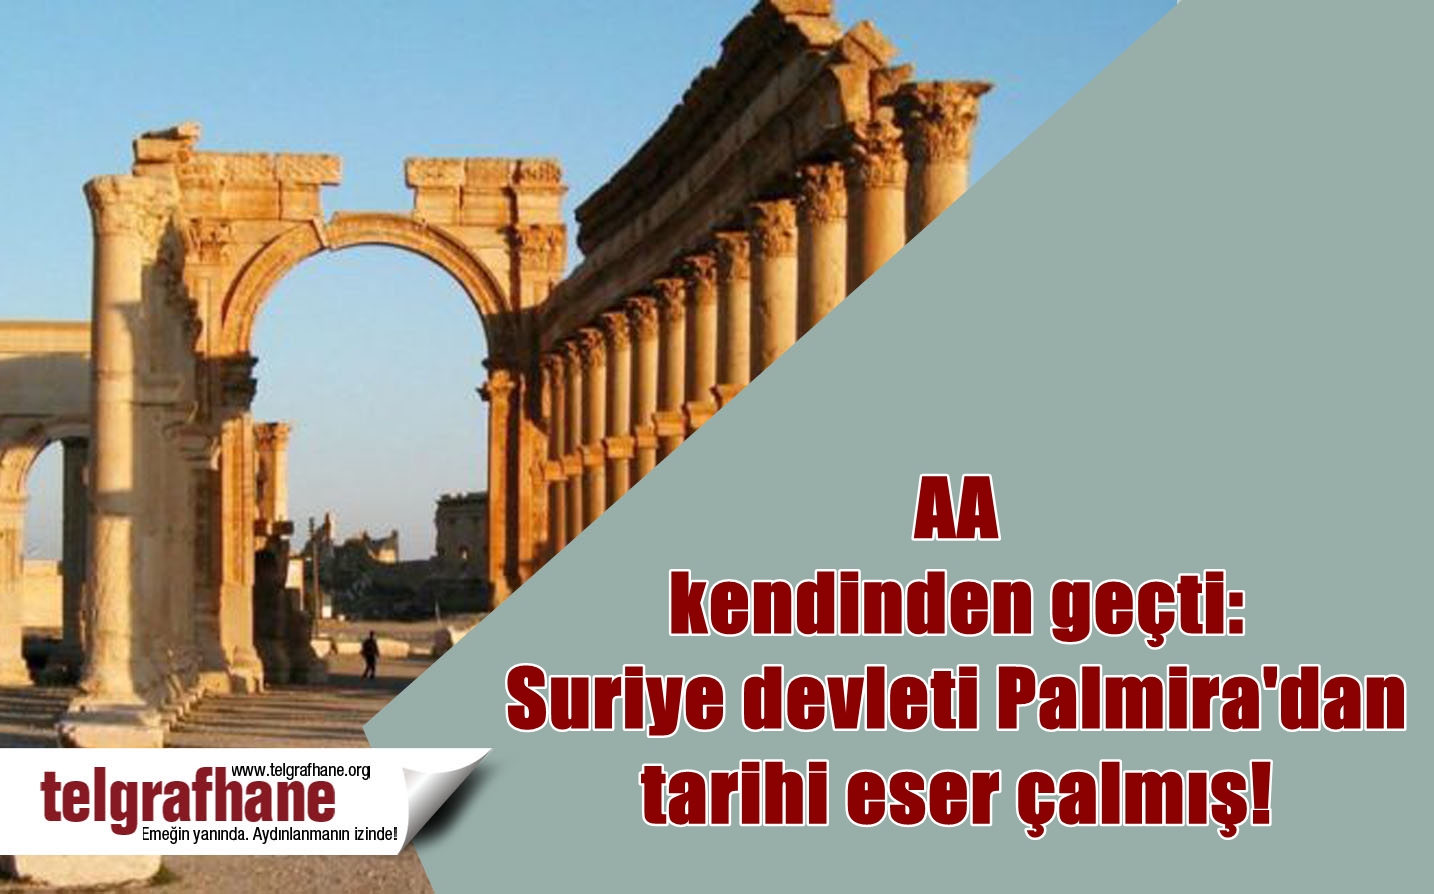 AA kendinden geçti: Suriye devleti Palmira’dan tarihi eser çalmış!